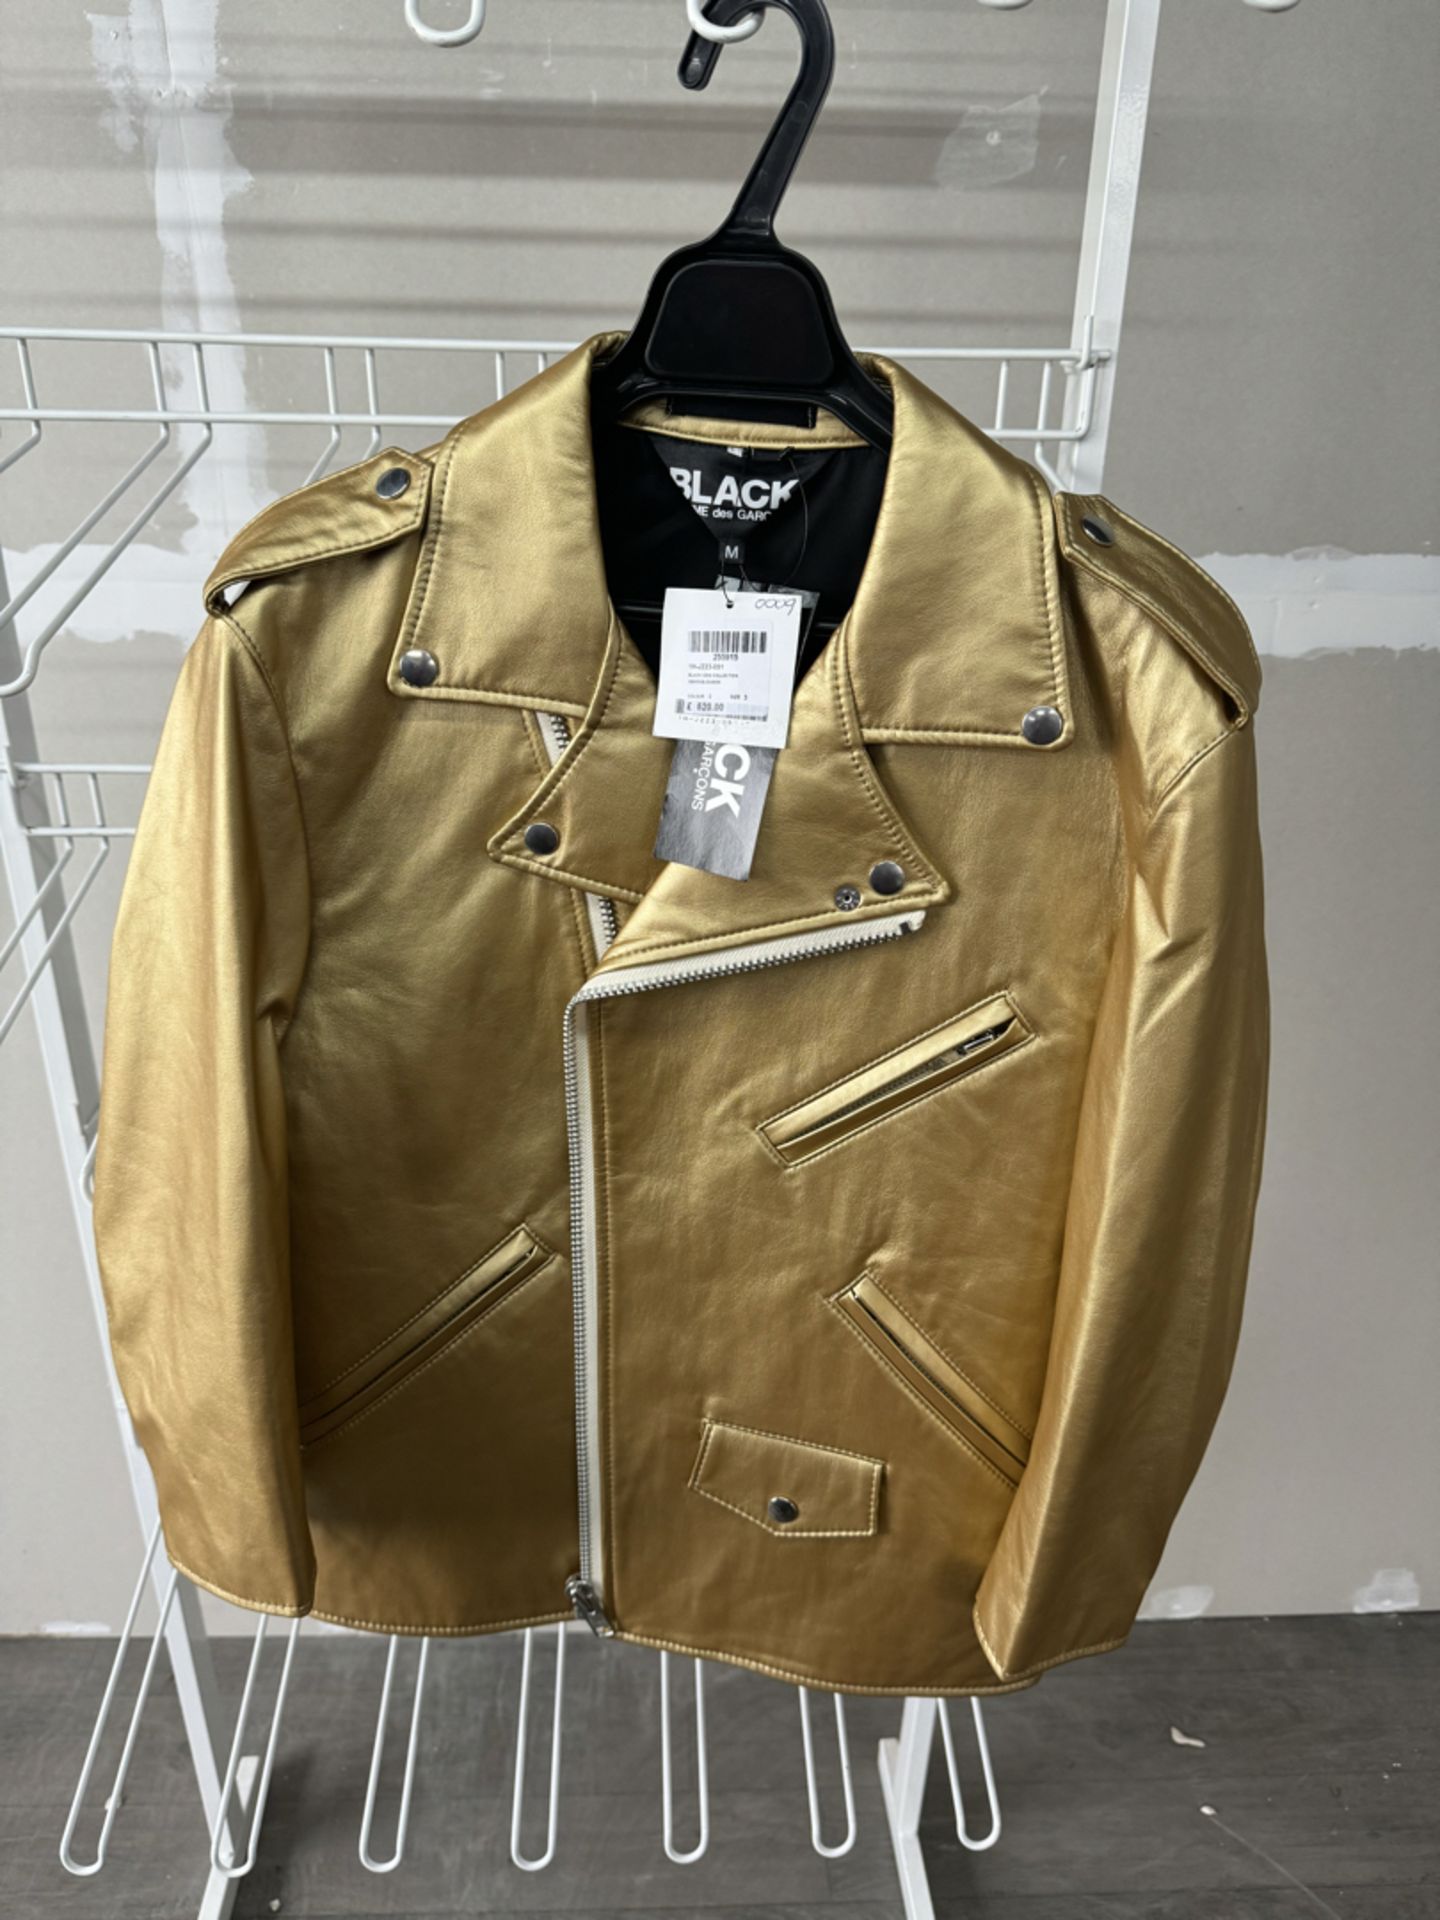 Comme Des GarÃ§ons Ladies Gold Jacket - New with Tags - Size Medium - RRP Â£520  - NO VAT!